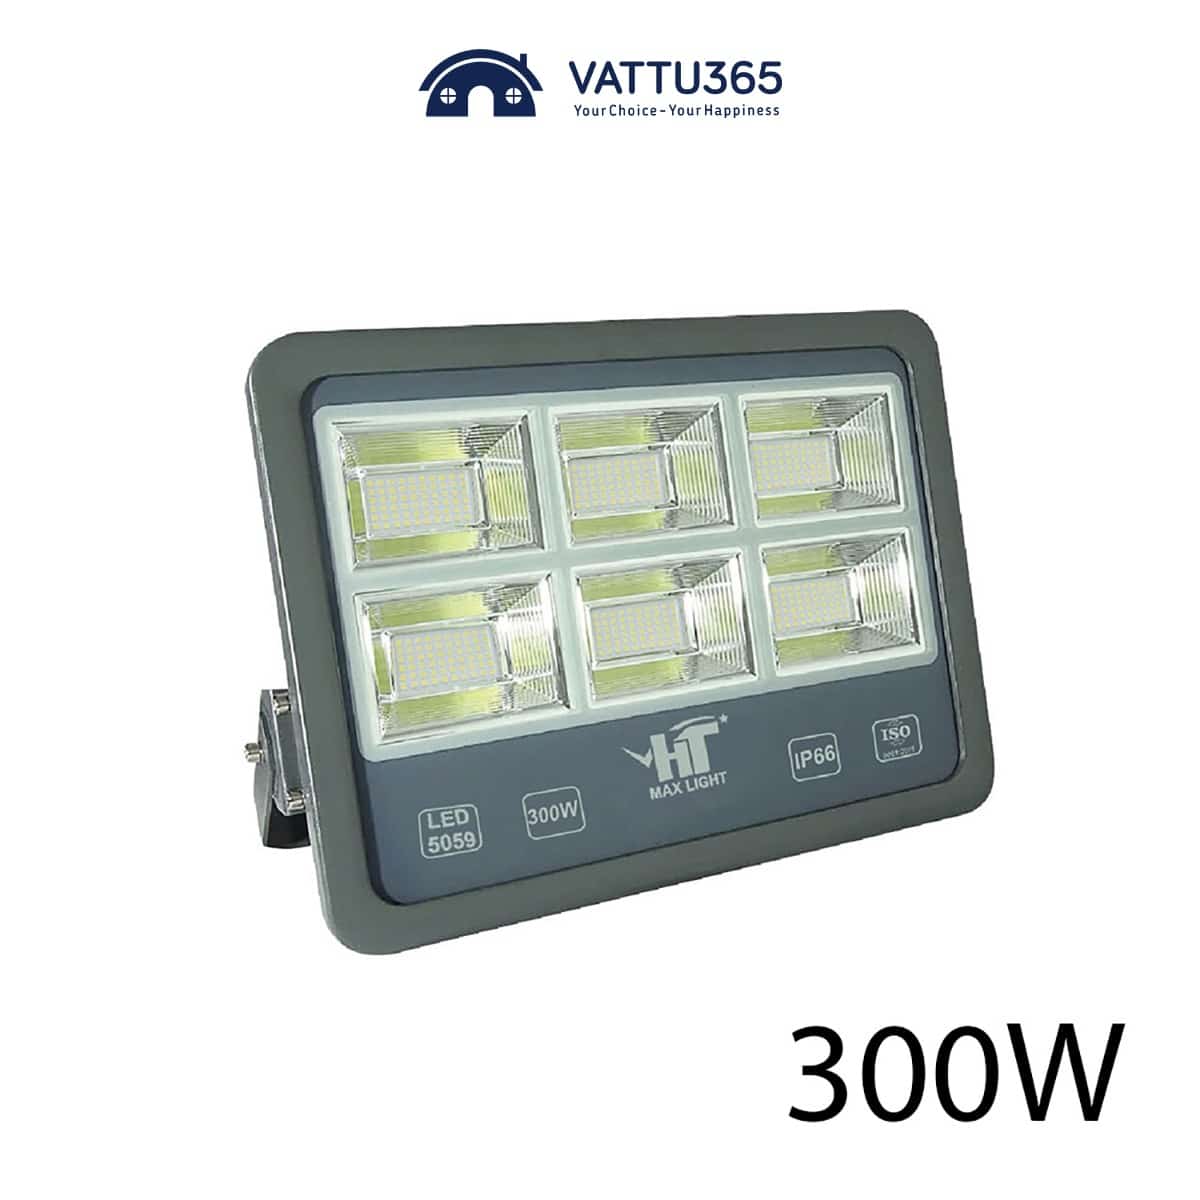 Đèn pha LED HT 300W chống nước IP66 5059 Series | Chính hãng HT